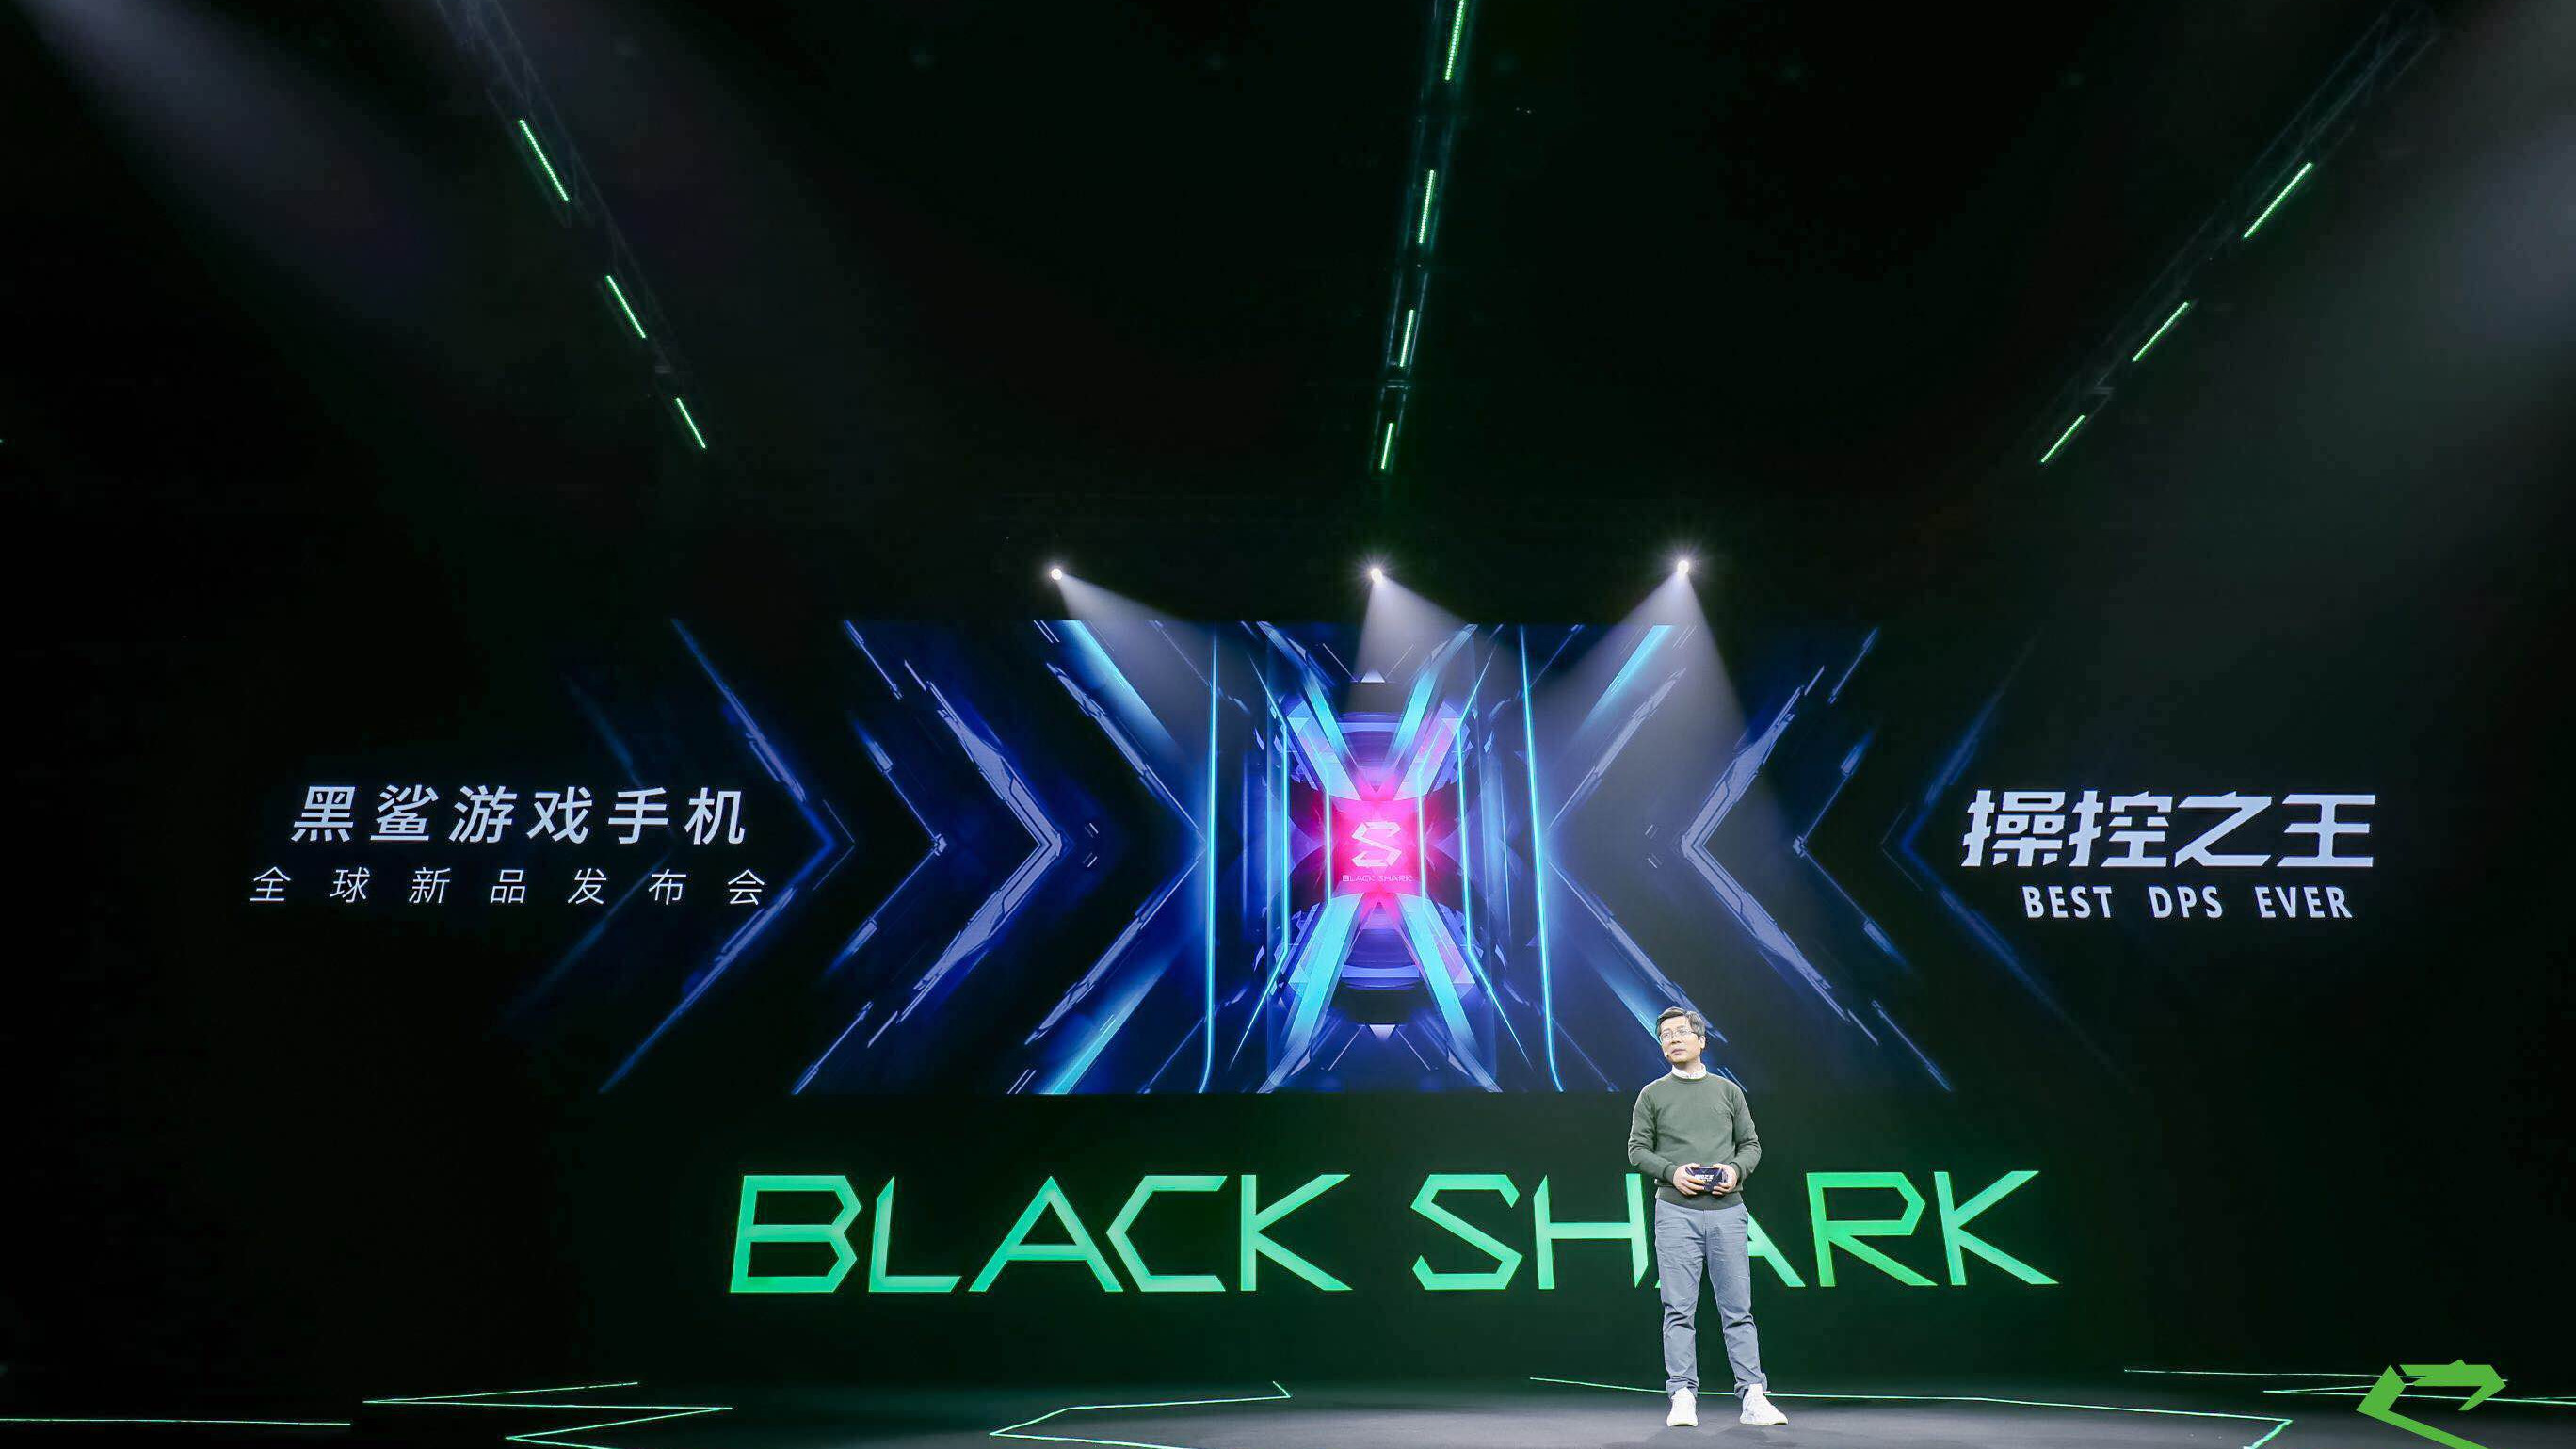 黑鲨游戏手机2将于3月22日登陆京东首发